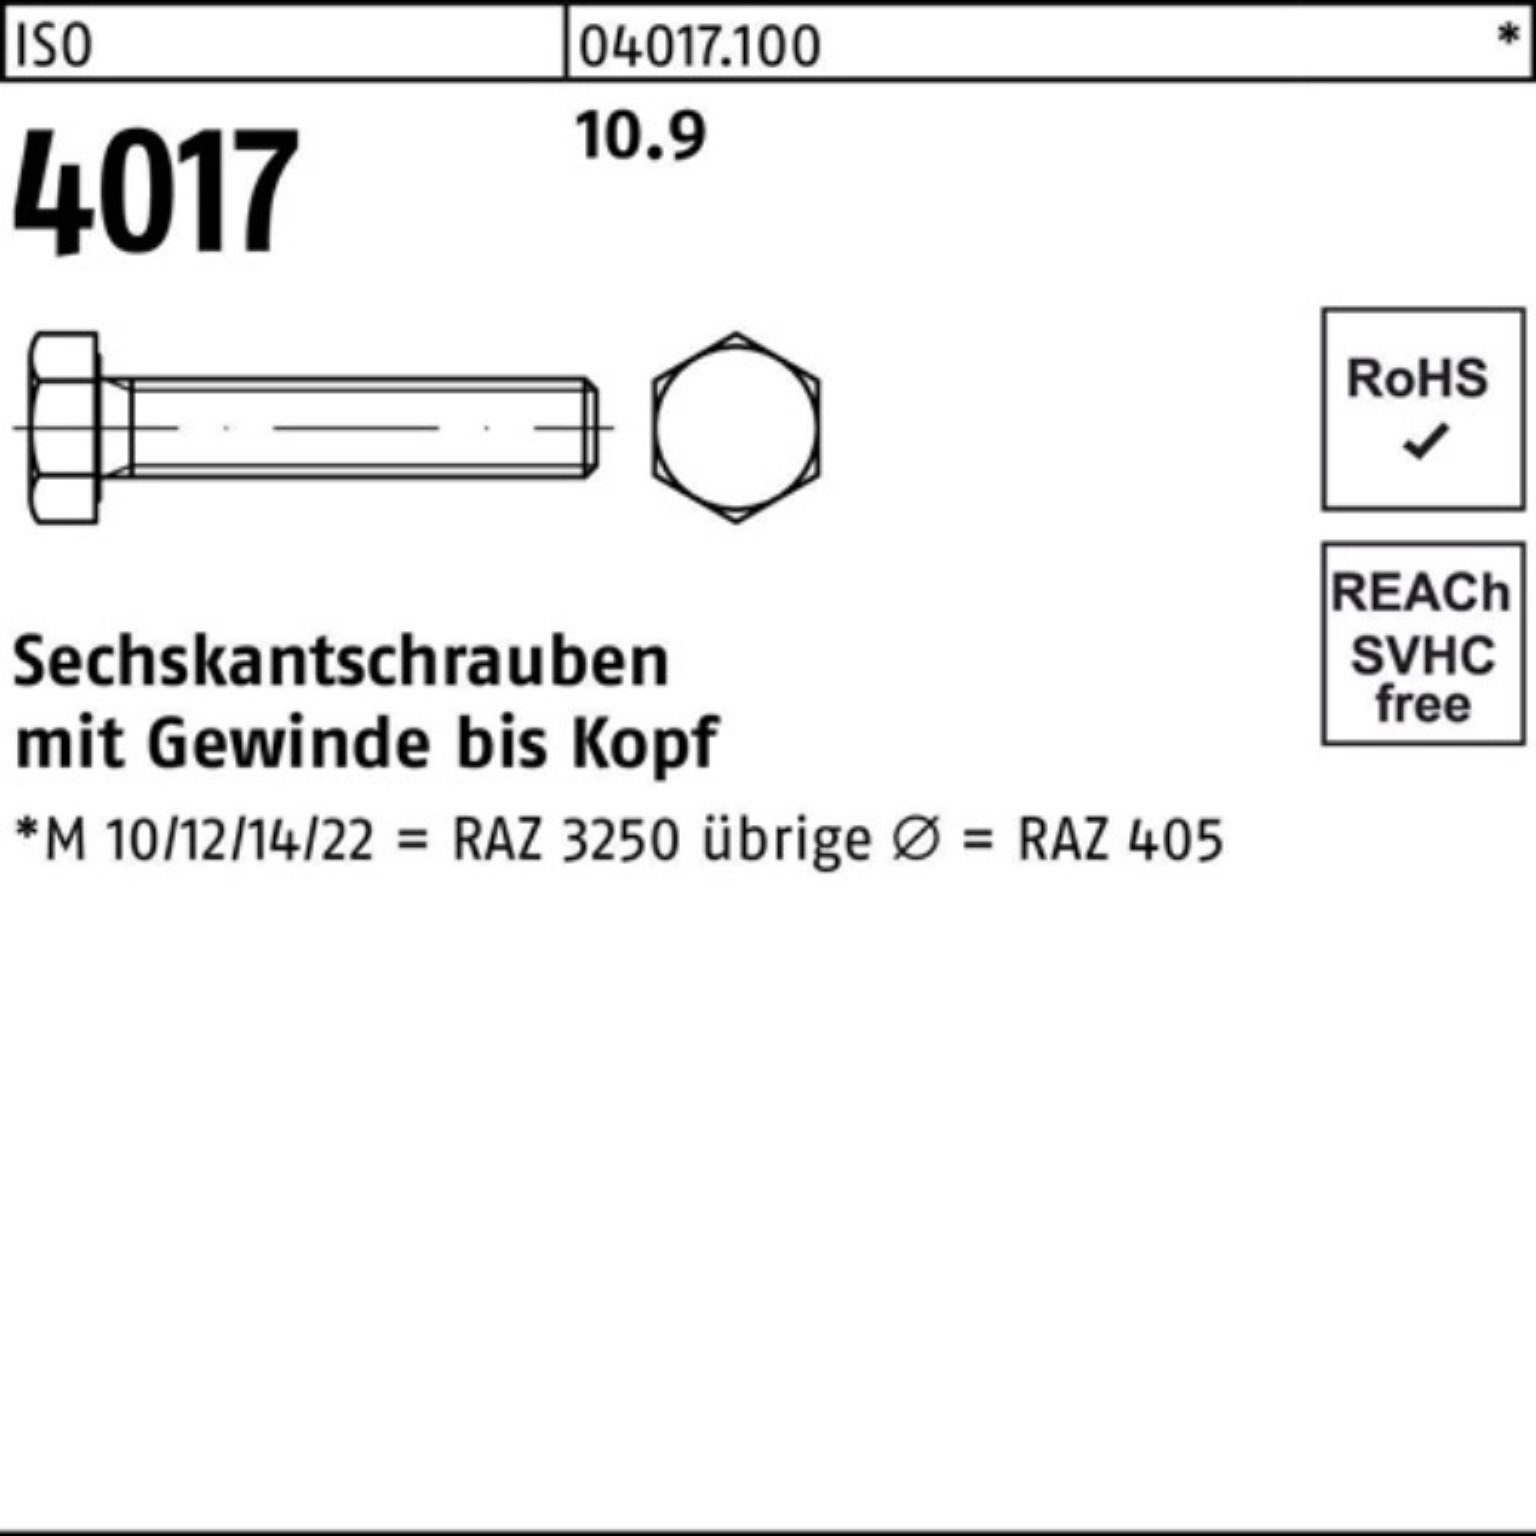 Sechskantschraube Bufab 4017 100er 25 4 ISO Pack M12x VG 10.9 ISO 170 Stück Sechskantschraube